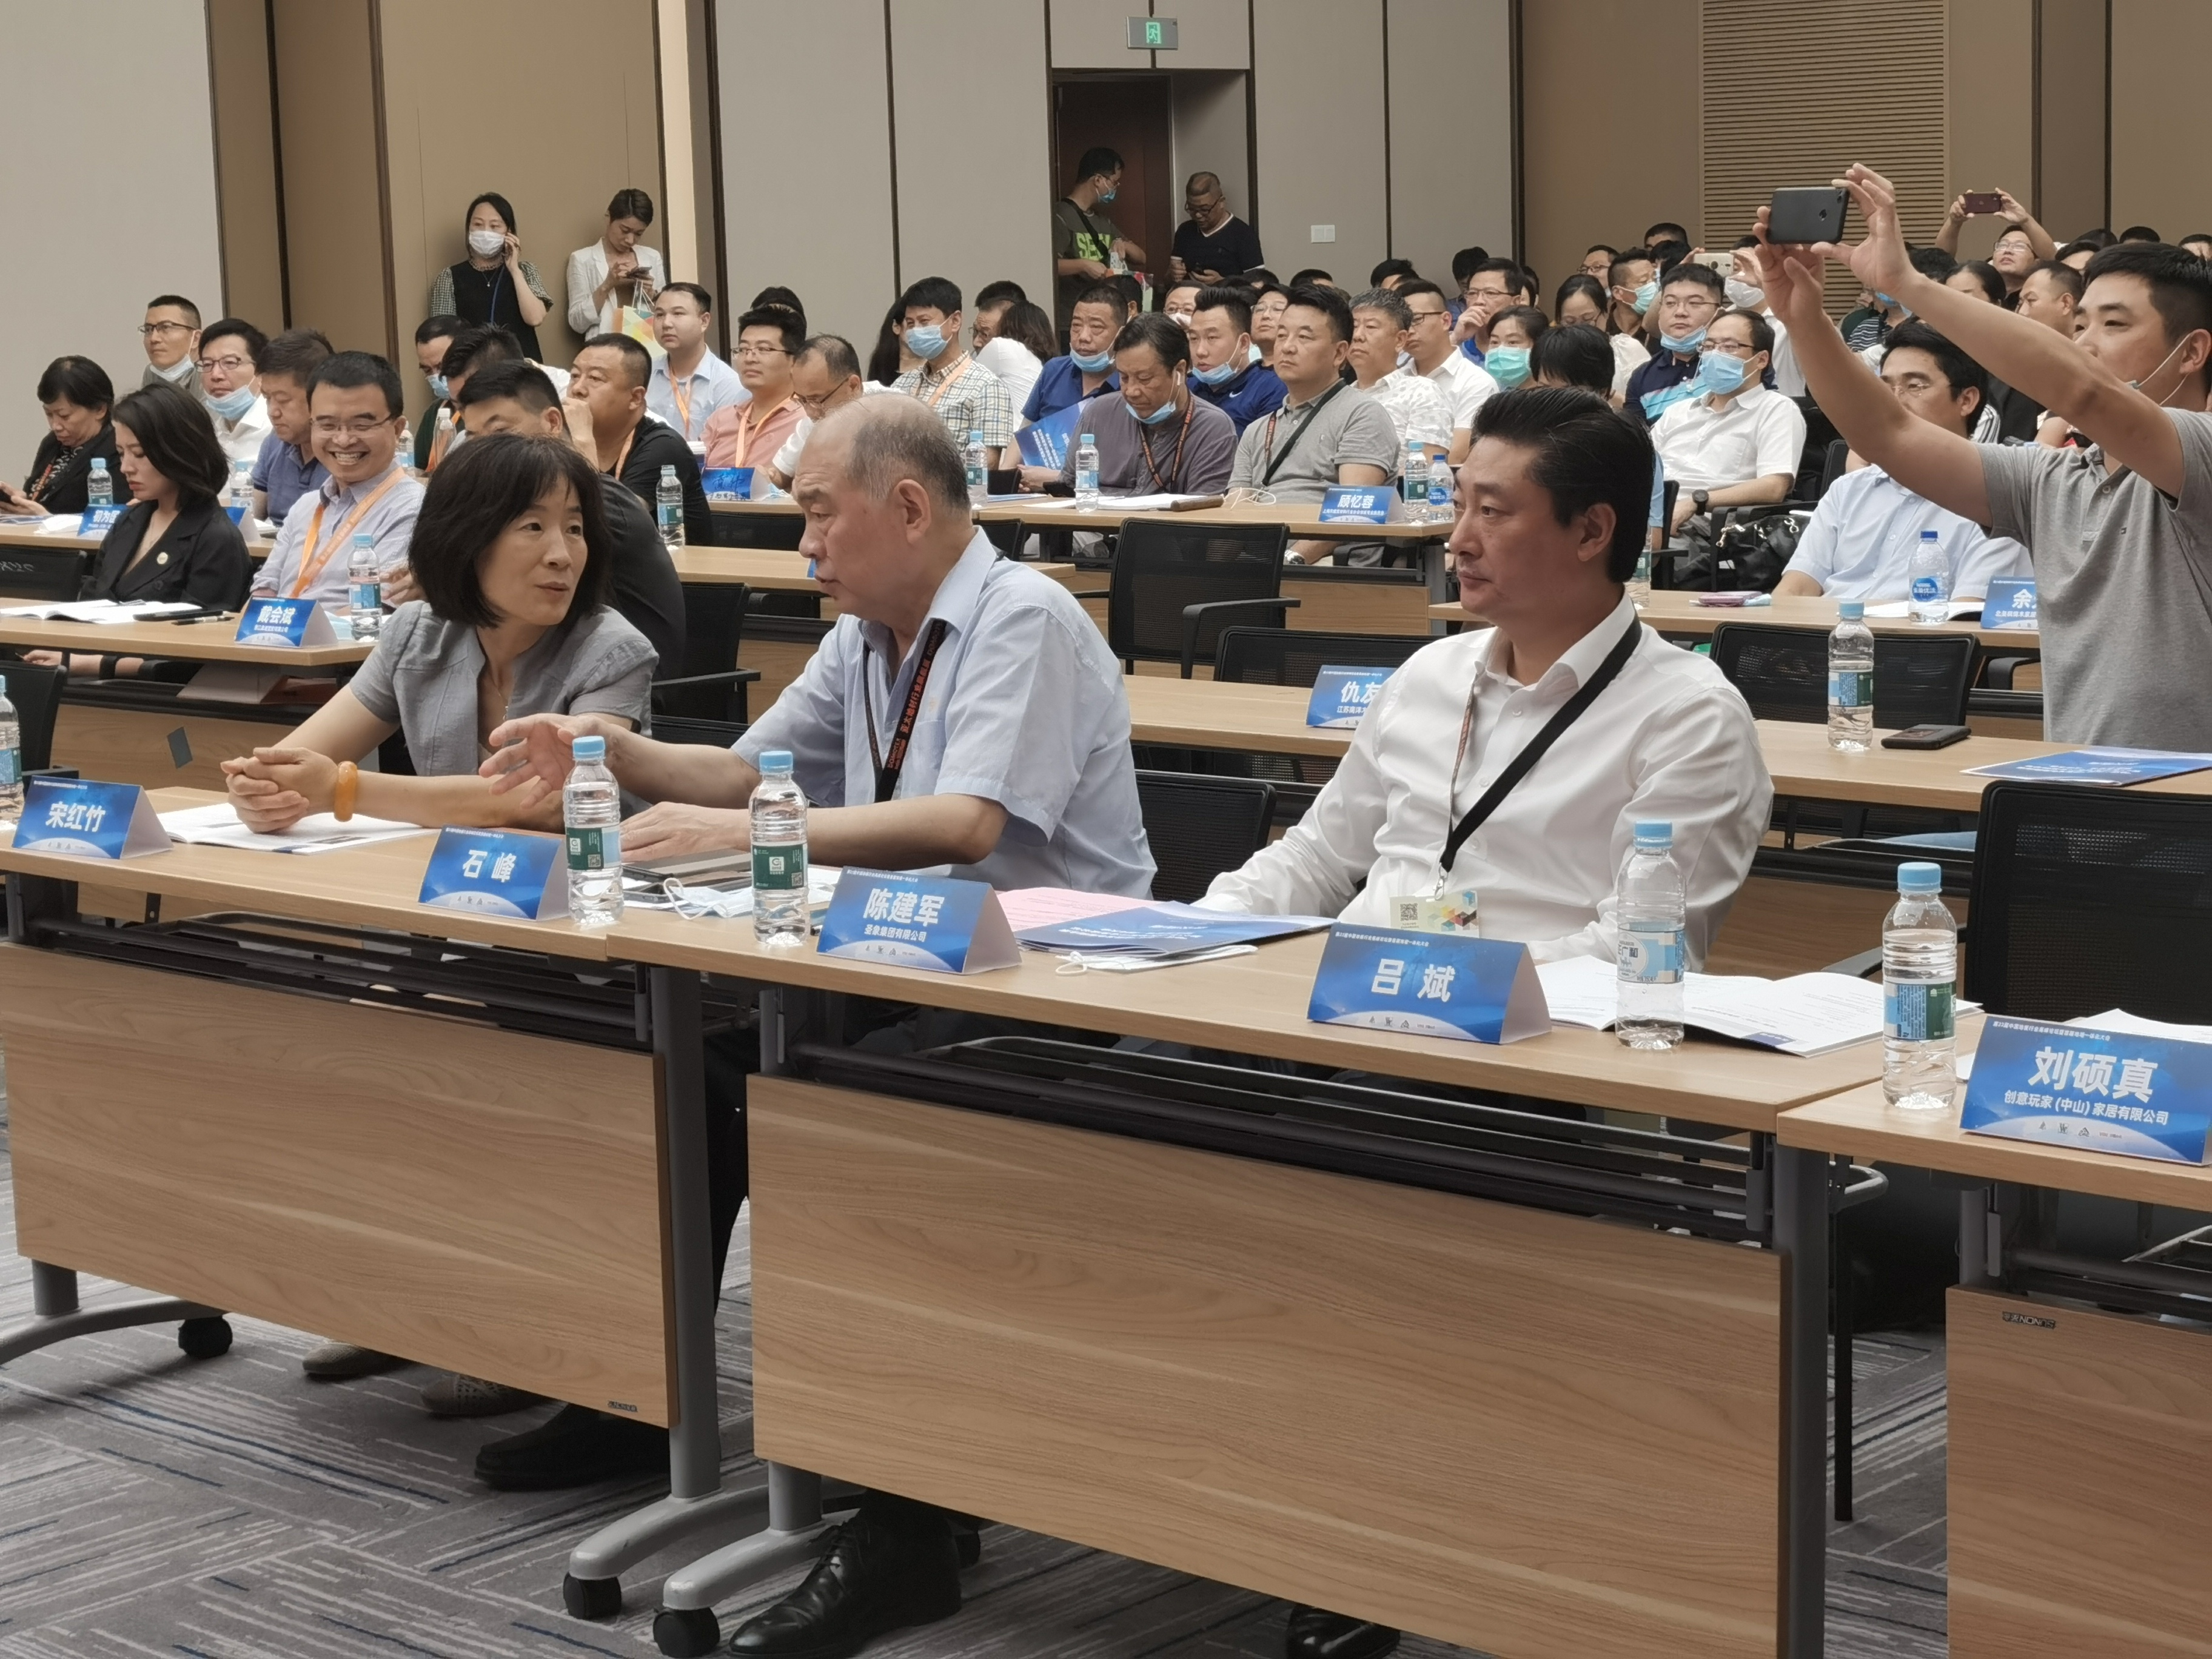 圣象董事长陈建军作主题发言并获产业创新第23届中国地板行业高峰论坛